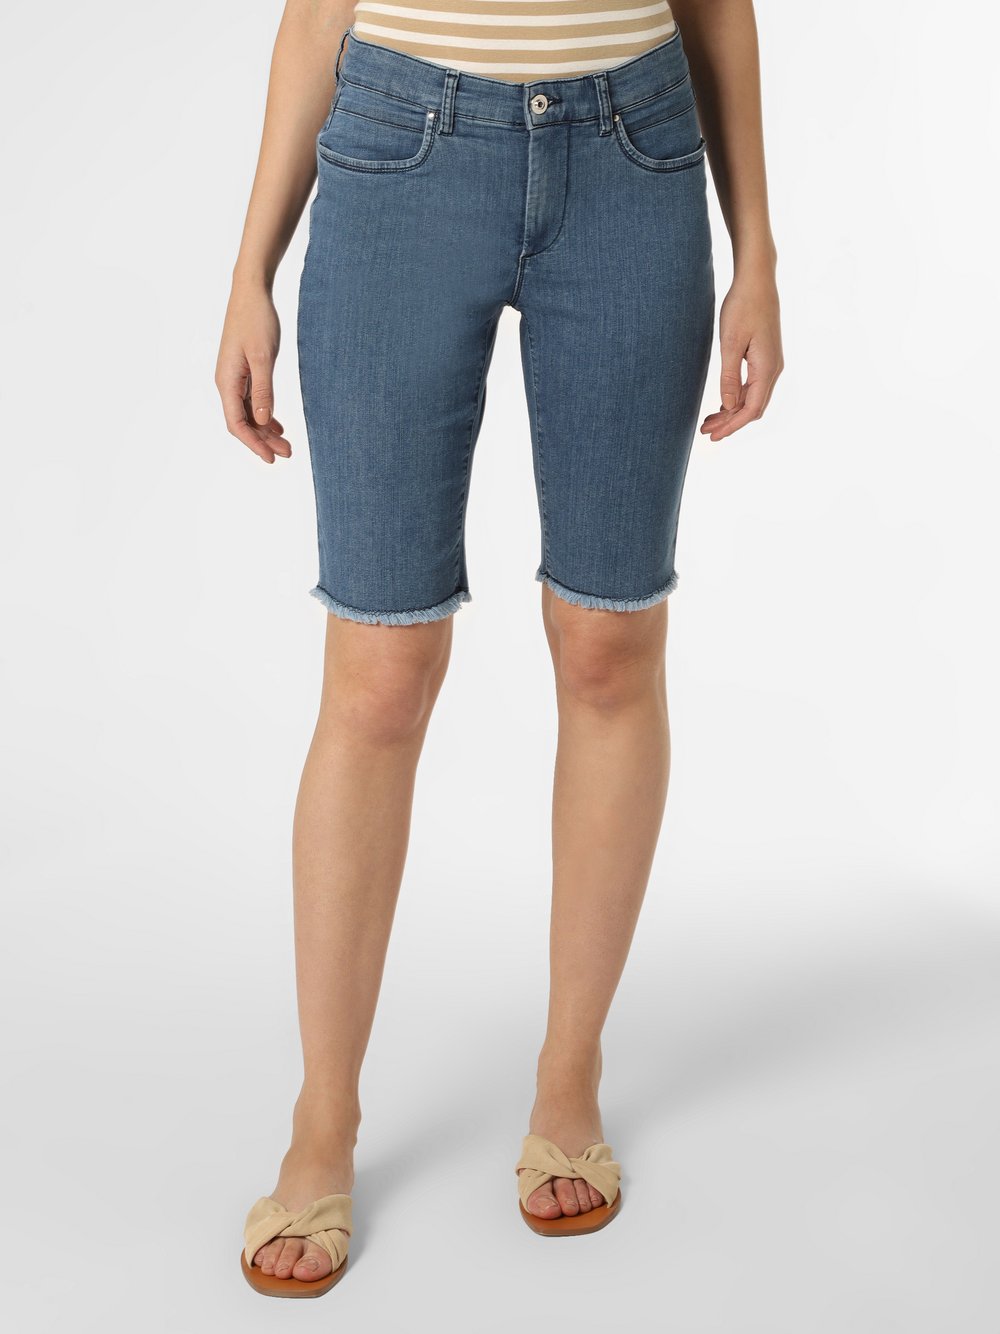 Olivia - Damskie spodenki jeansowe, niebieski